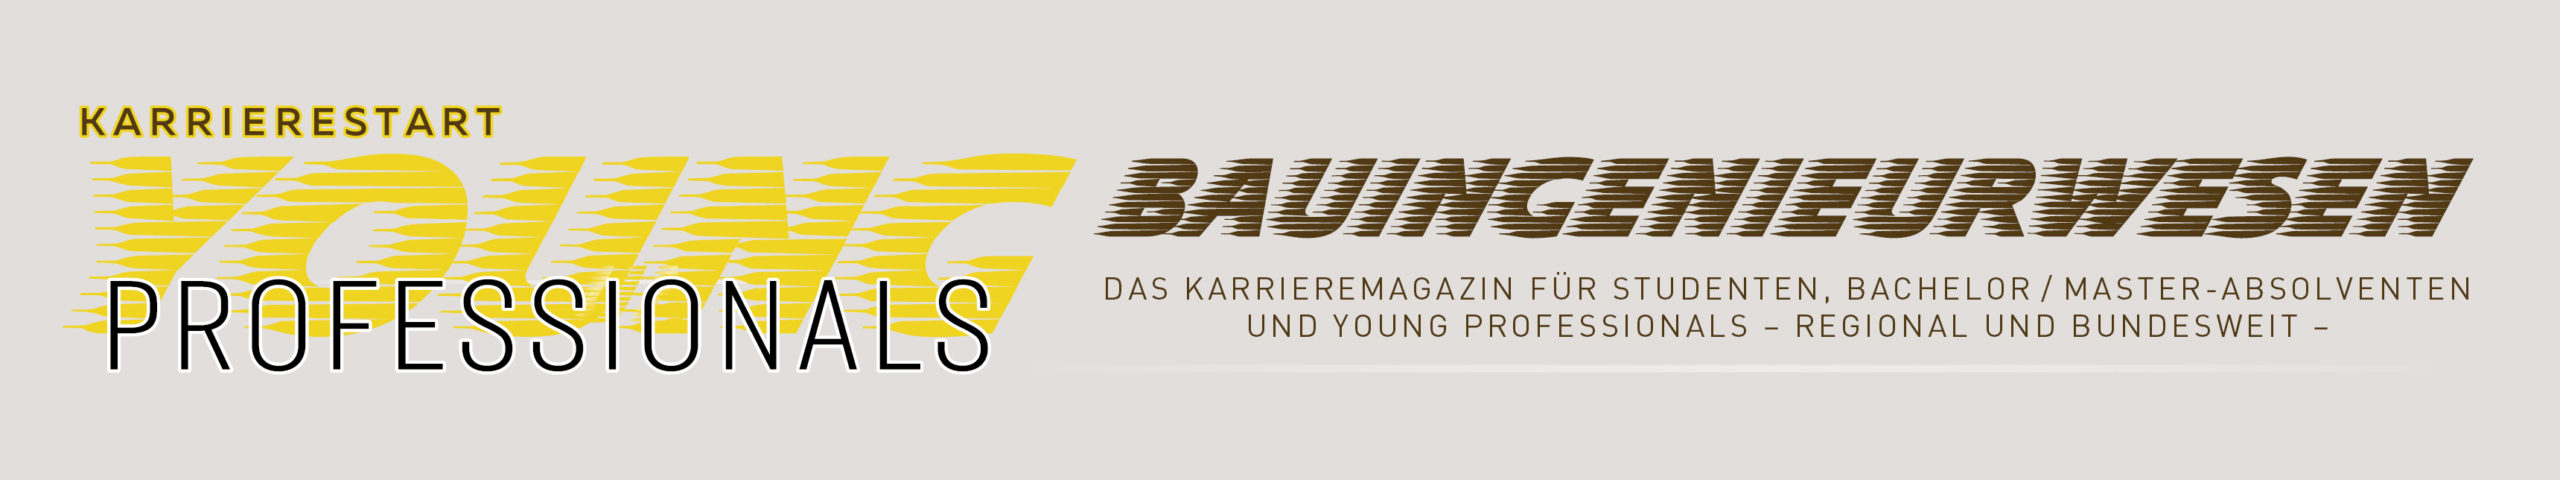 karrierestart-bauingenieure.de Logo